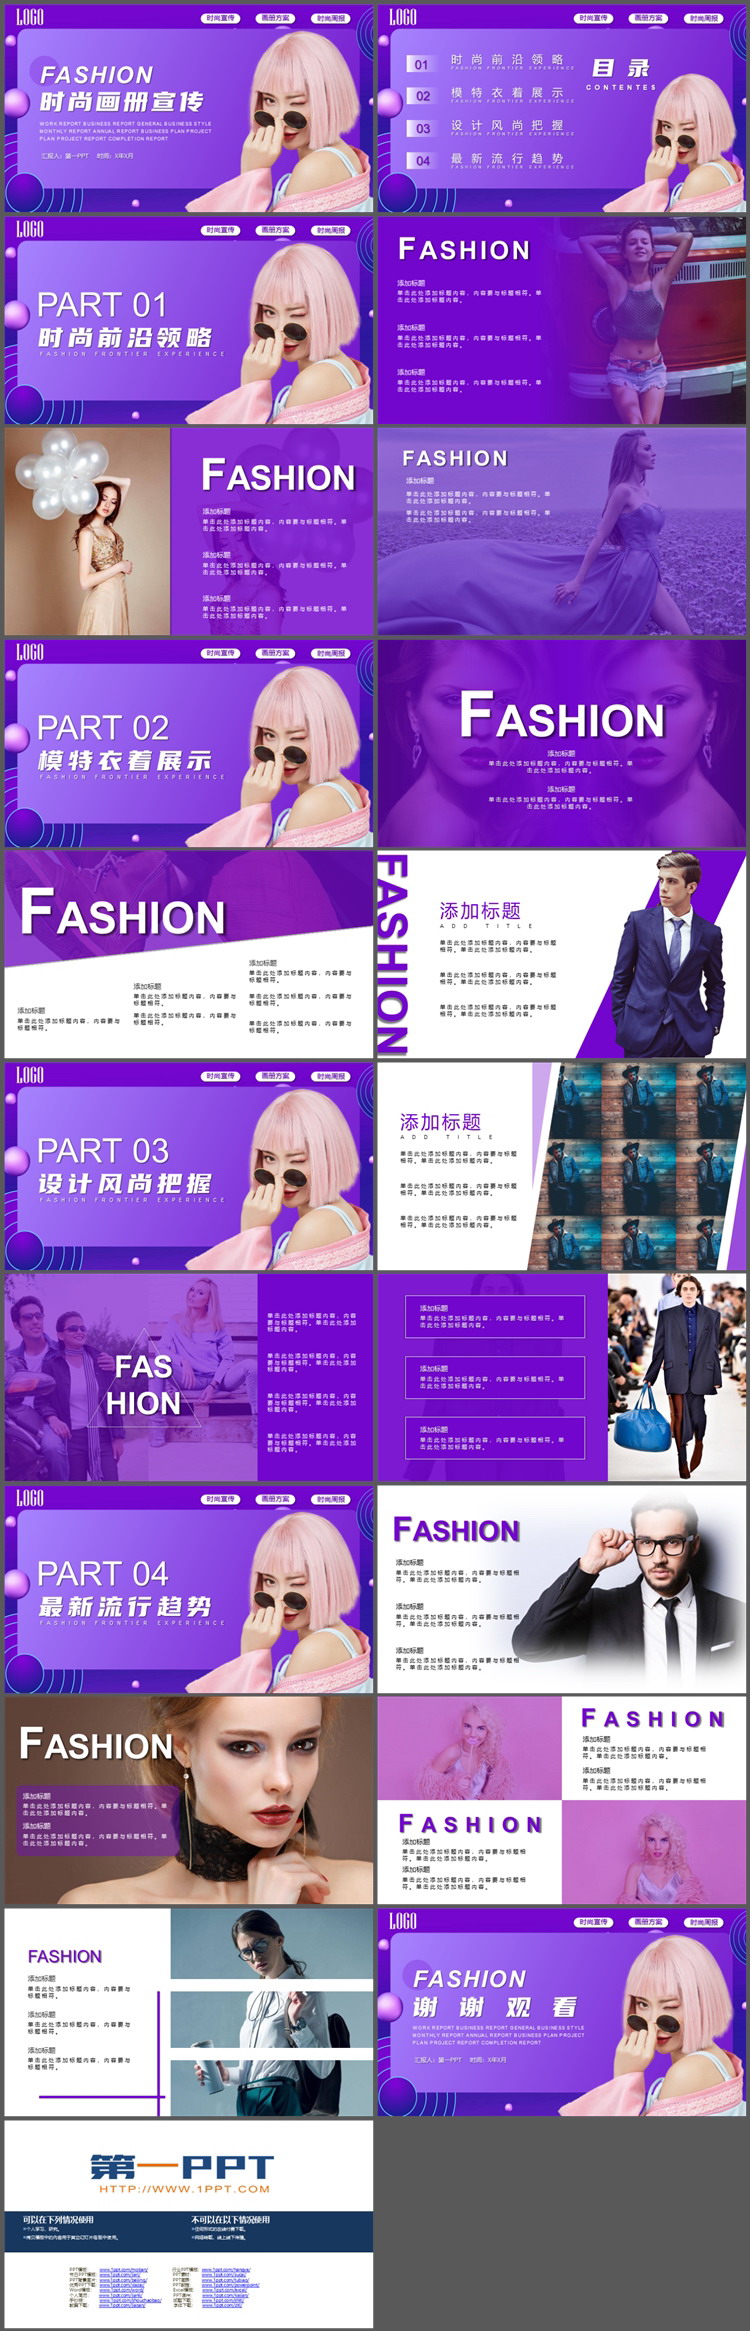 美女模特背景的紫色时尚宣传画册PPT模板下载